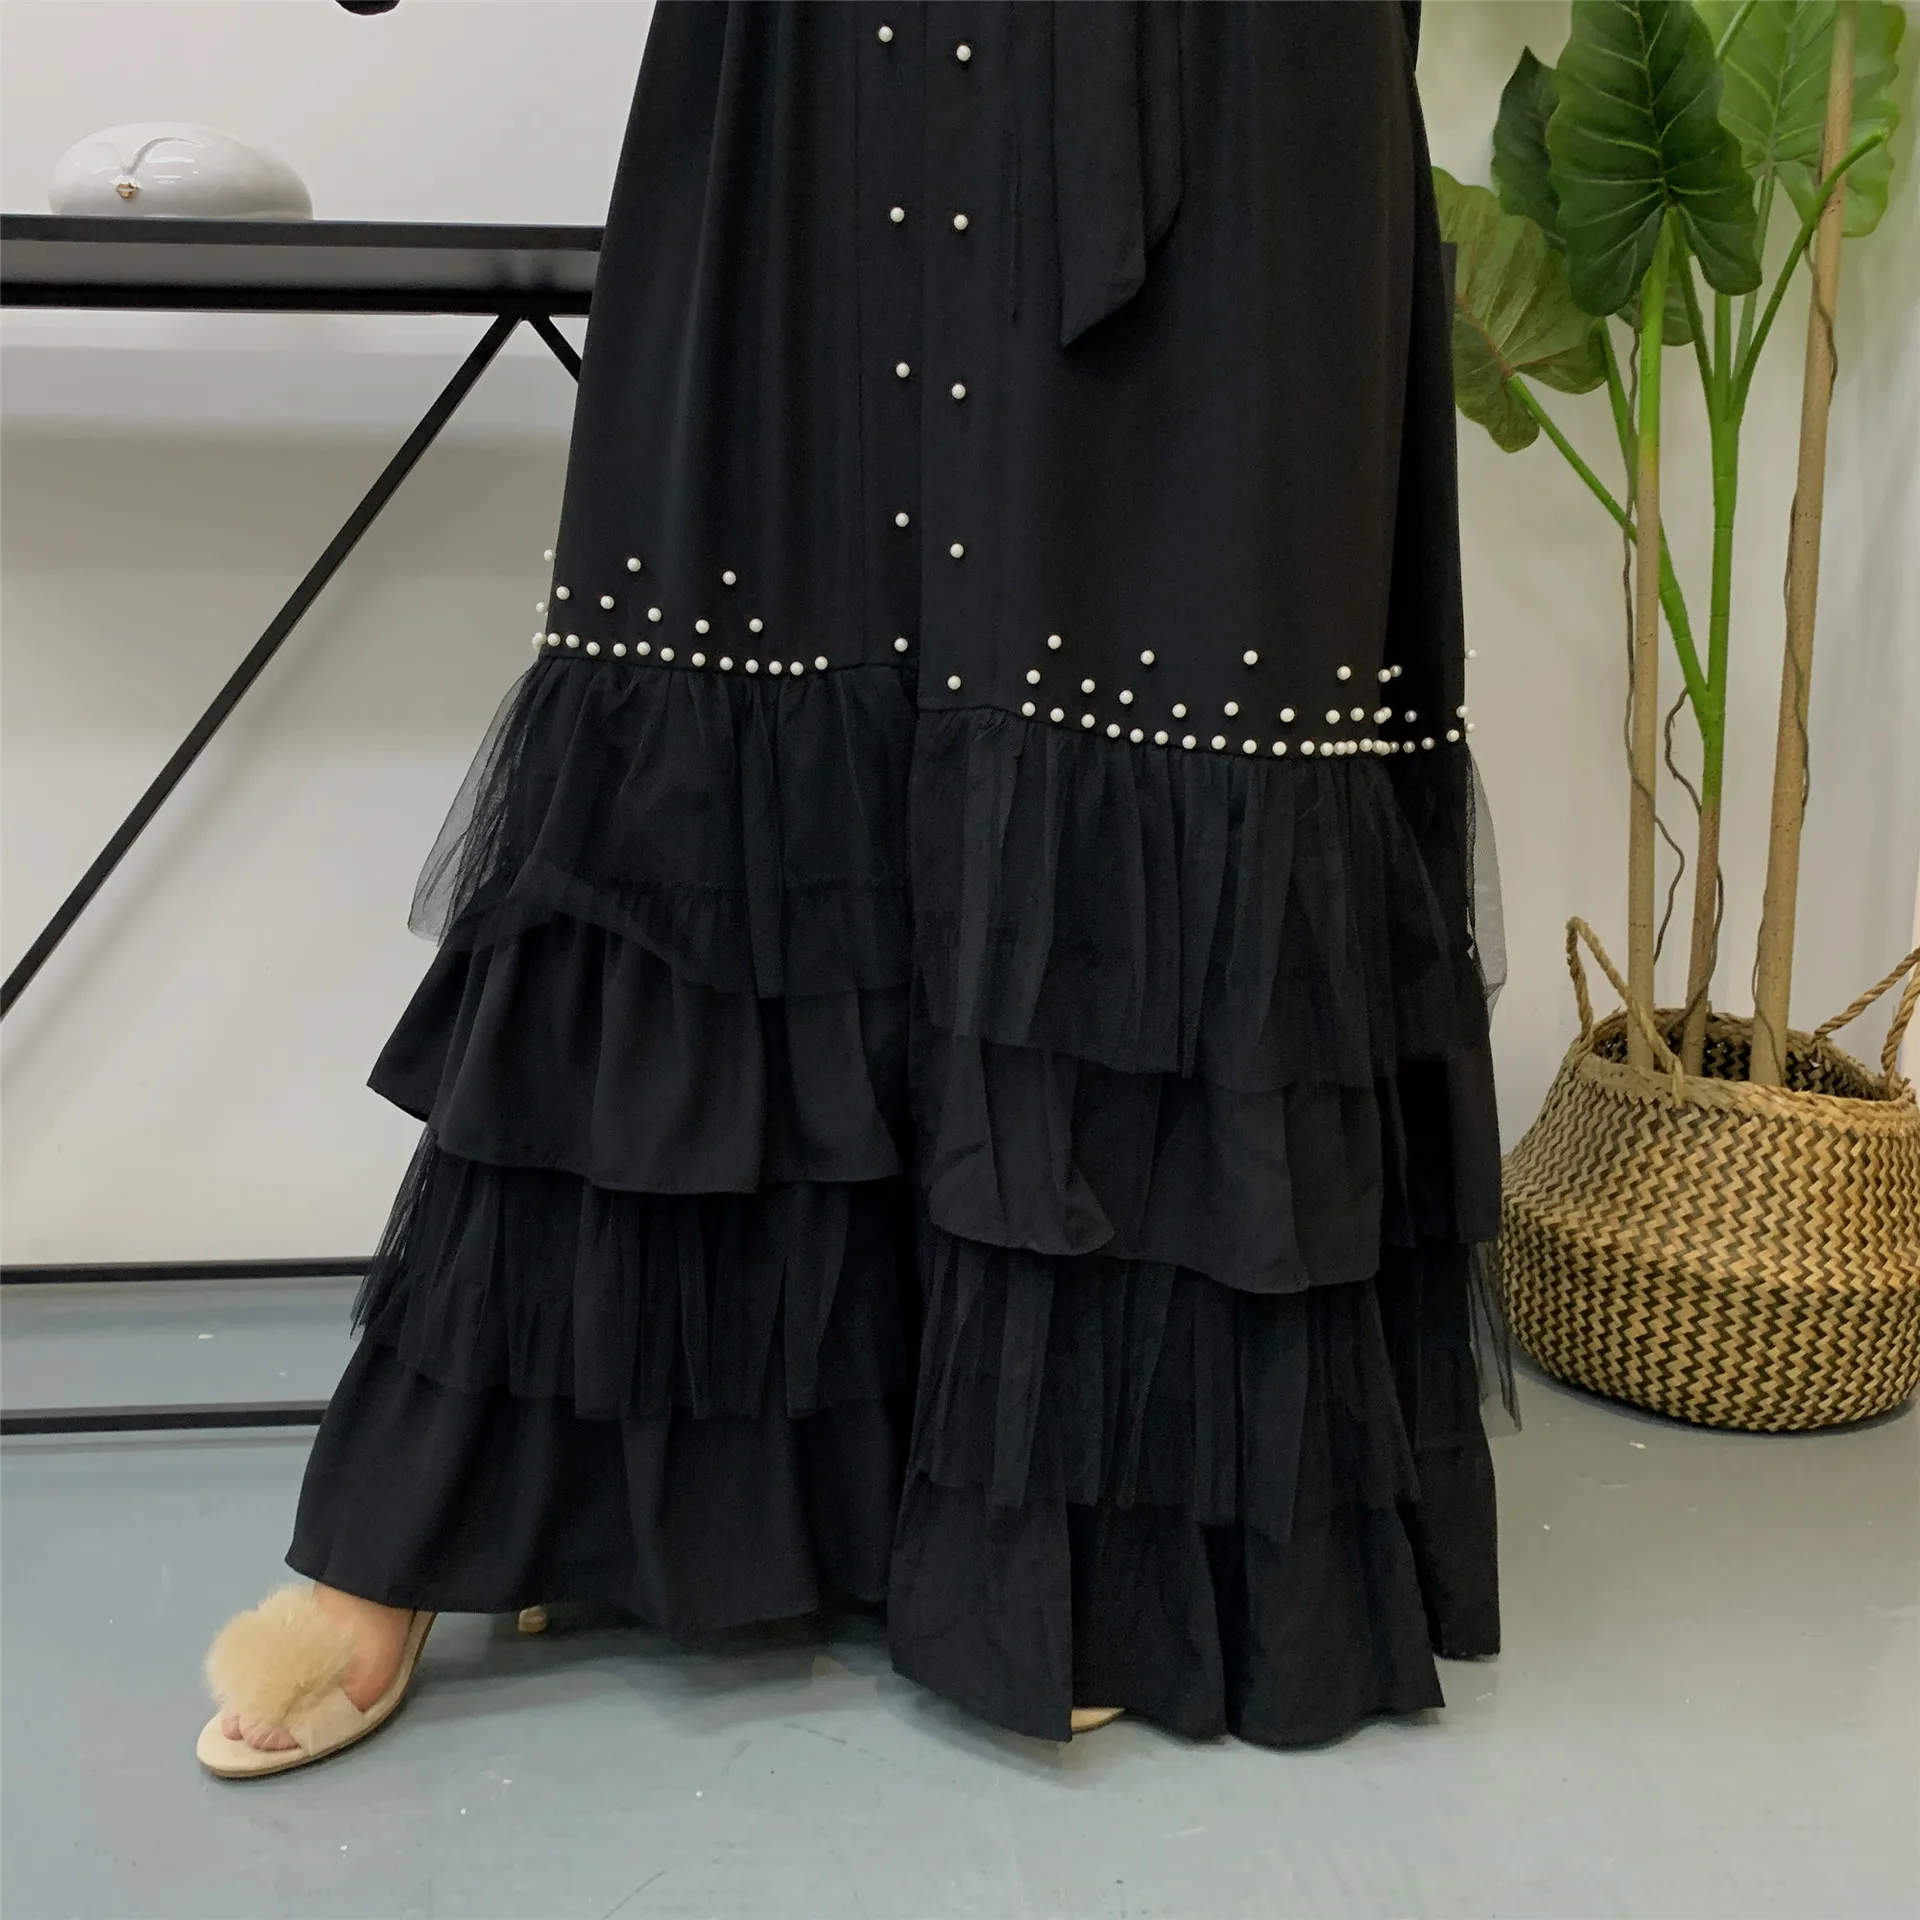 Muslim Women Modest Black Ethnic Clothing Beading Cake Bottom Mesh Design Kimono Cardigan Islamic Chiffon Abaya Dubai